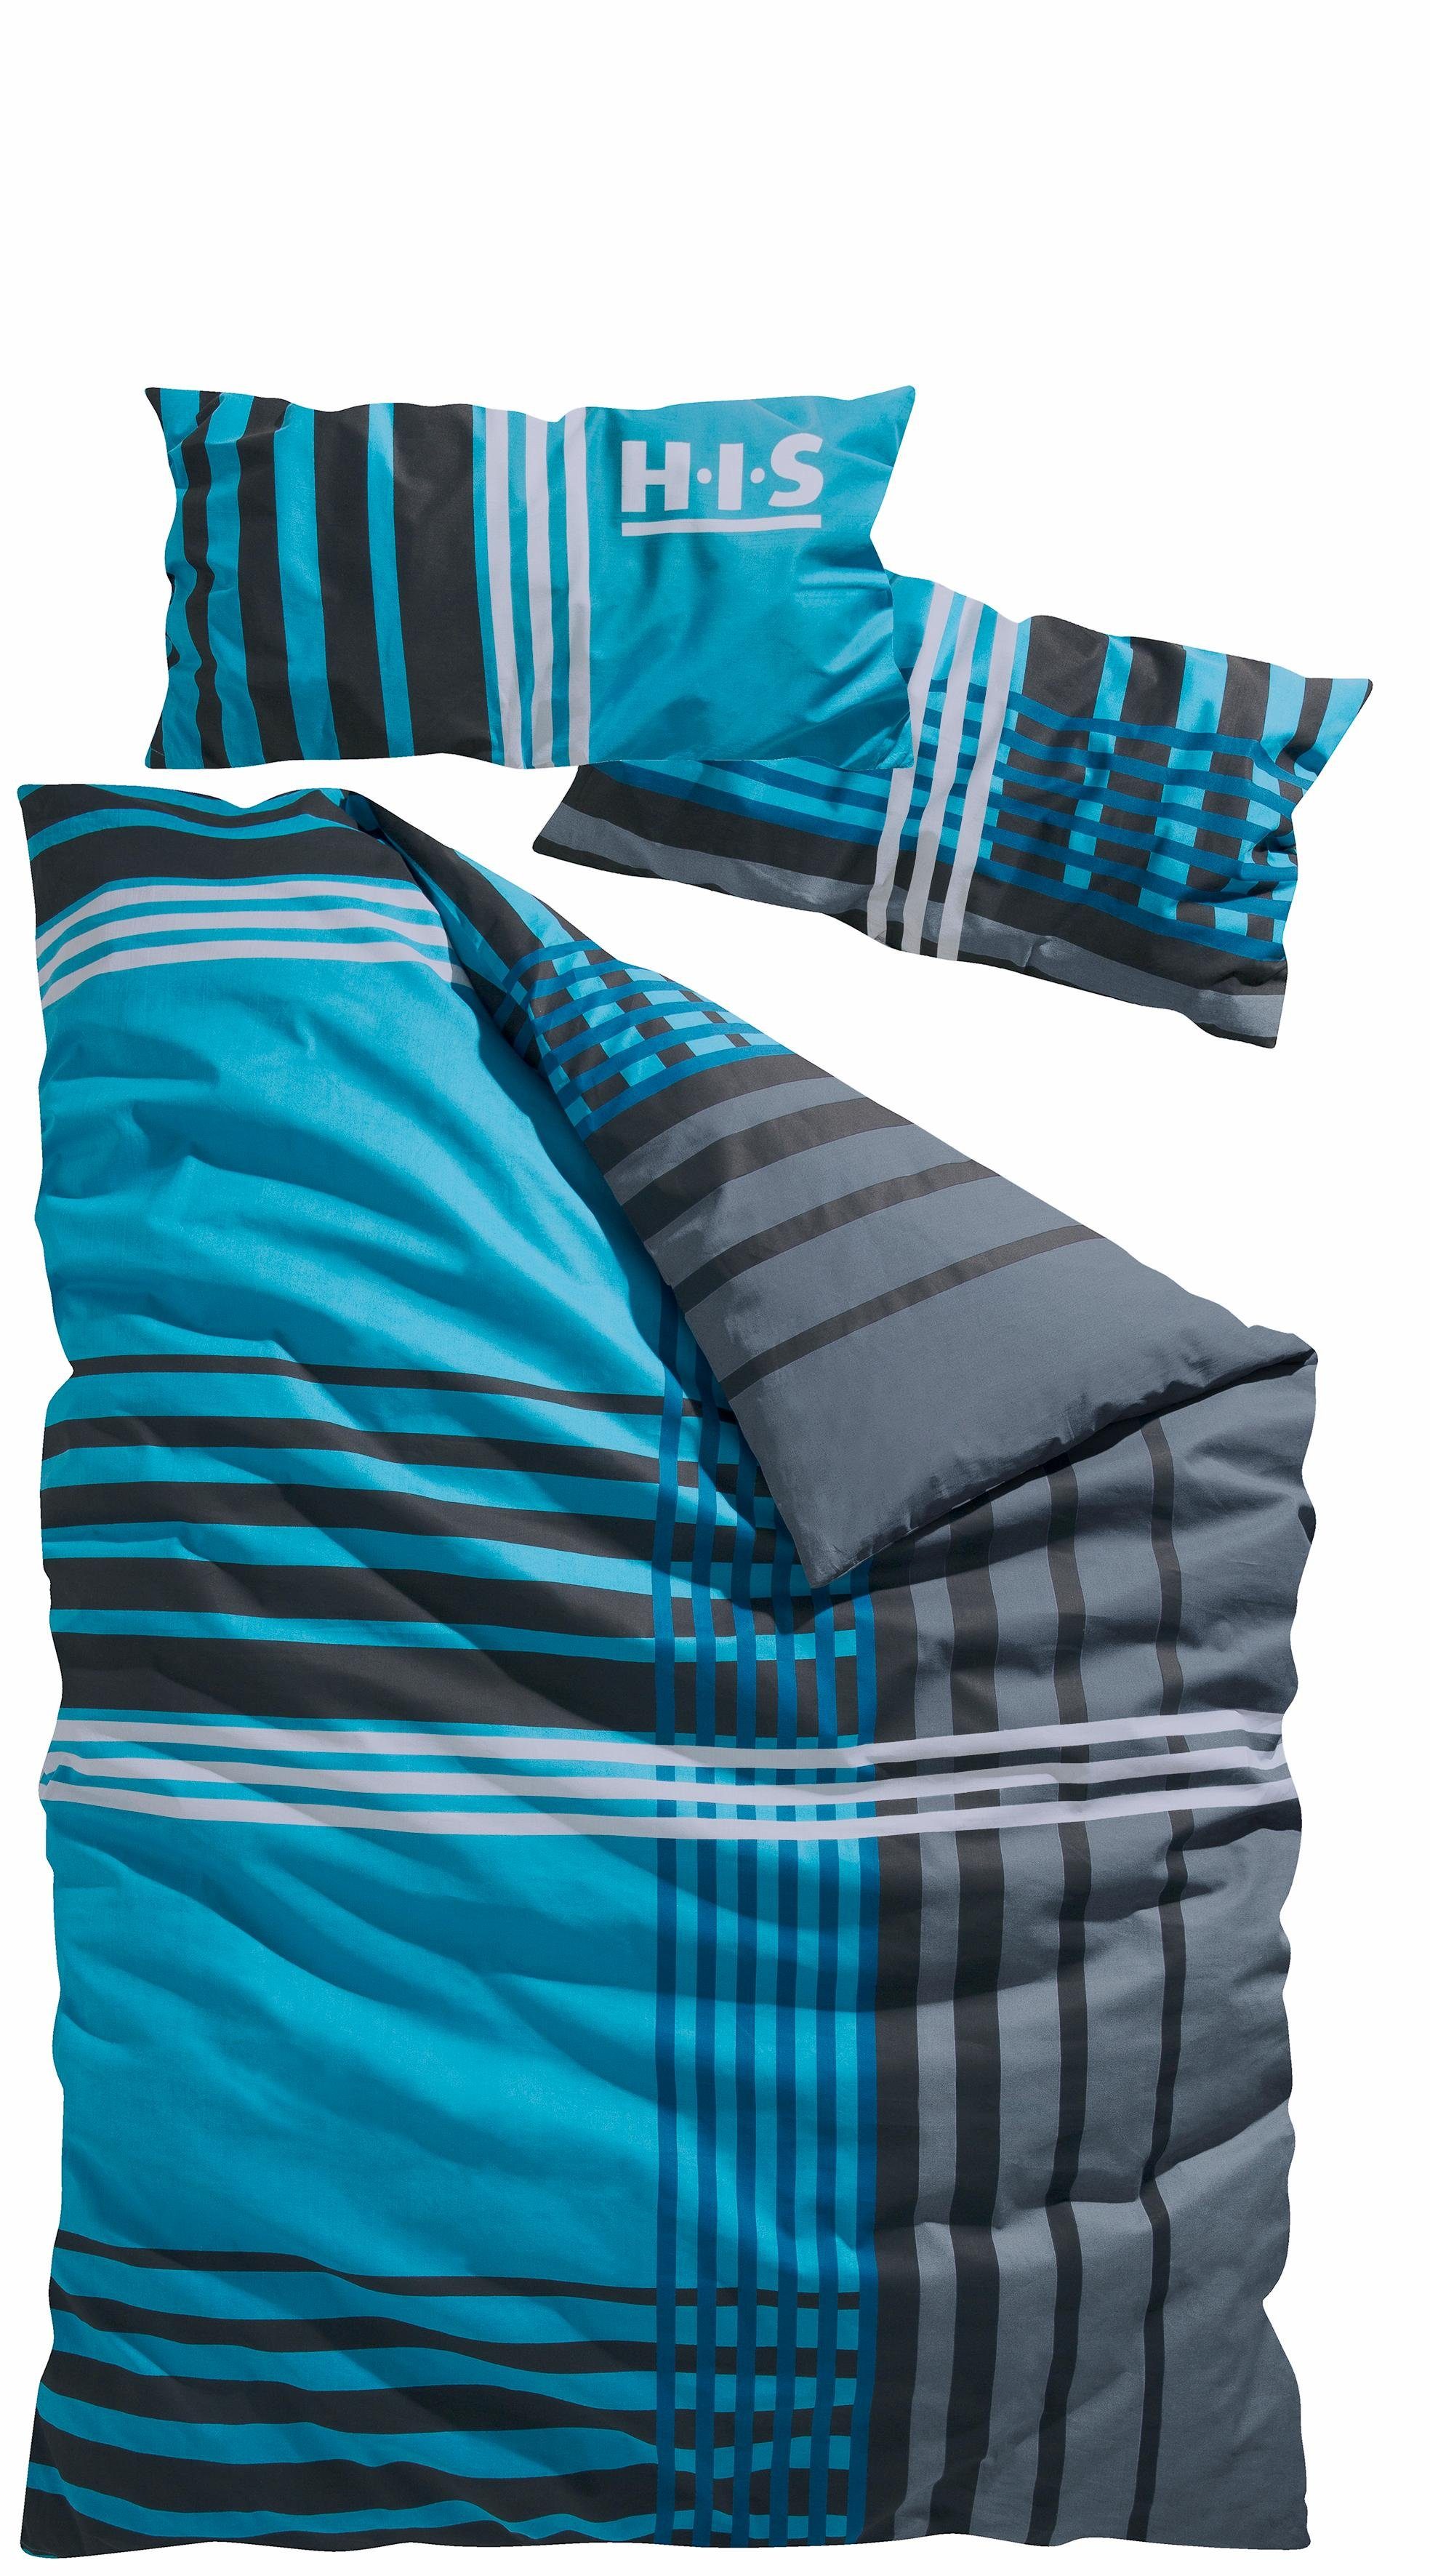 Bettwäsche Philip in Gr. 135x200 oder 155x220 cm, H.I.S, Renforcé, 2 teilig, sportliche Bettwäsche aus Baumwolle, kariert blau